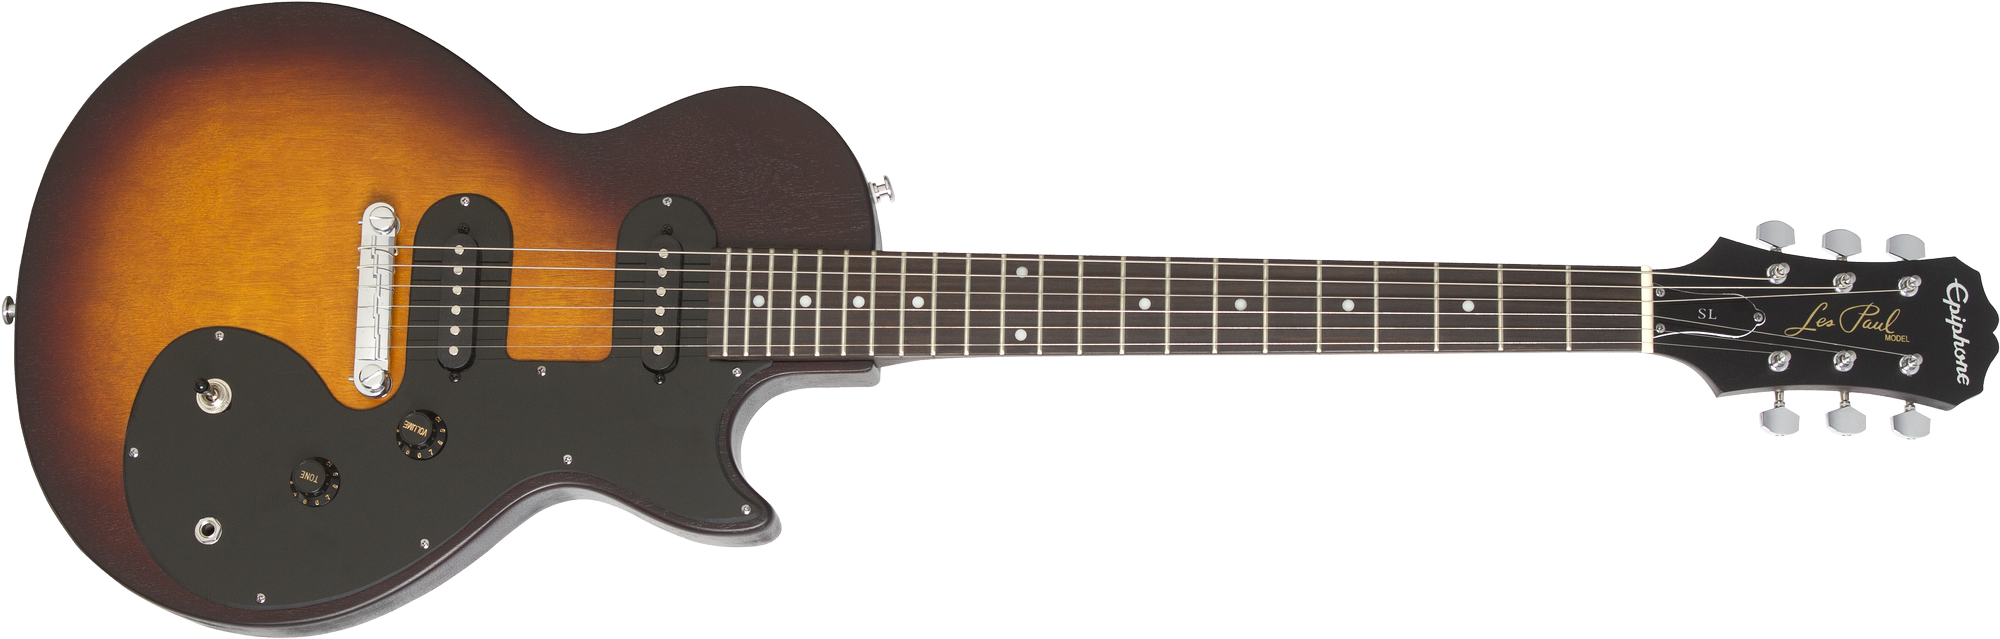 Billede af Epiphone Les Paul SL El-guitar (Vintage Sunburst)